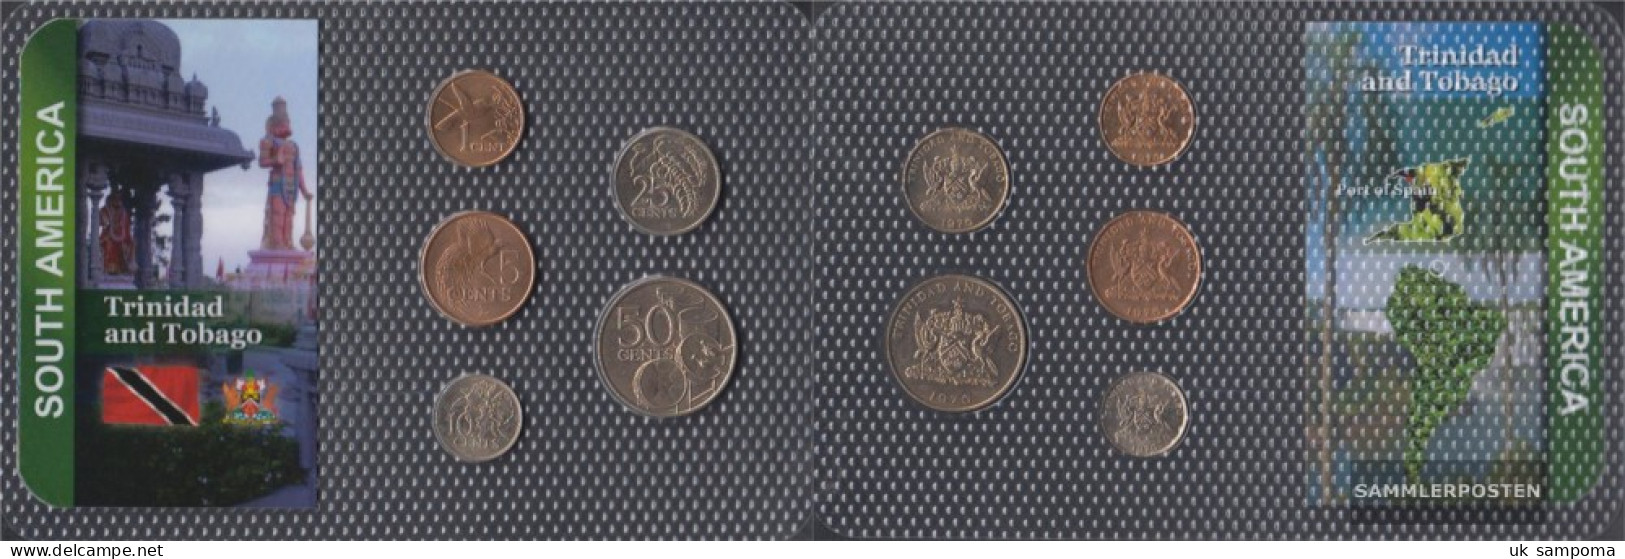 Trinidad And Tobago Stgl./unzirkuliert Kursmünzen Stgl./unzirkuliert From 1973 1 CENT Until 50 CENTs - Trinidad Y Tobago